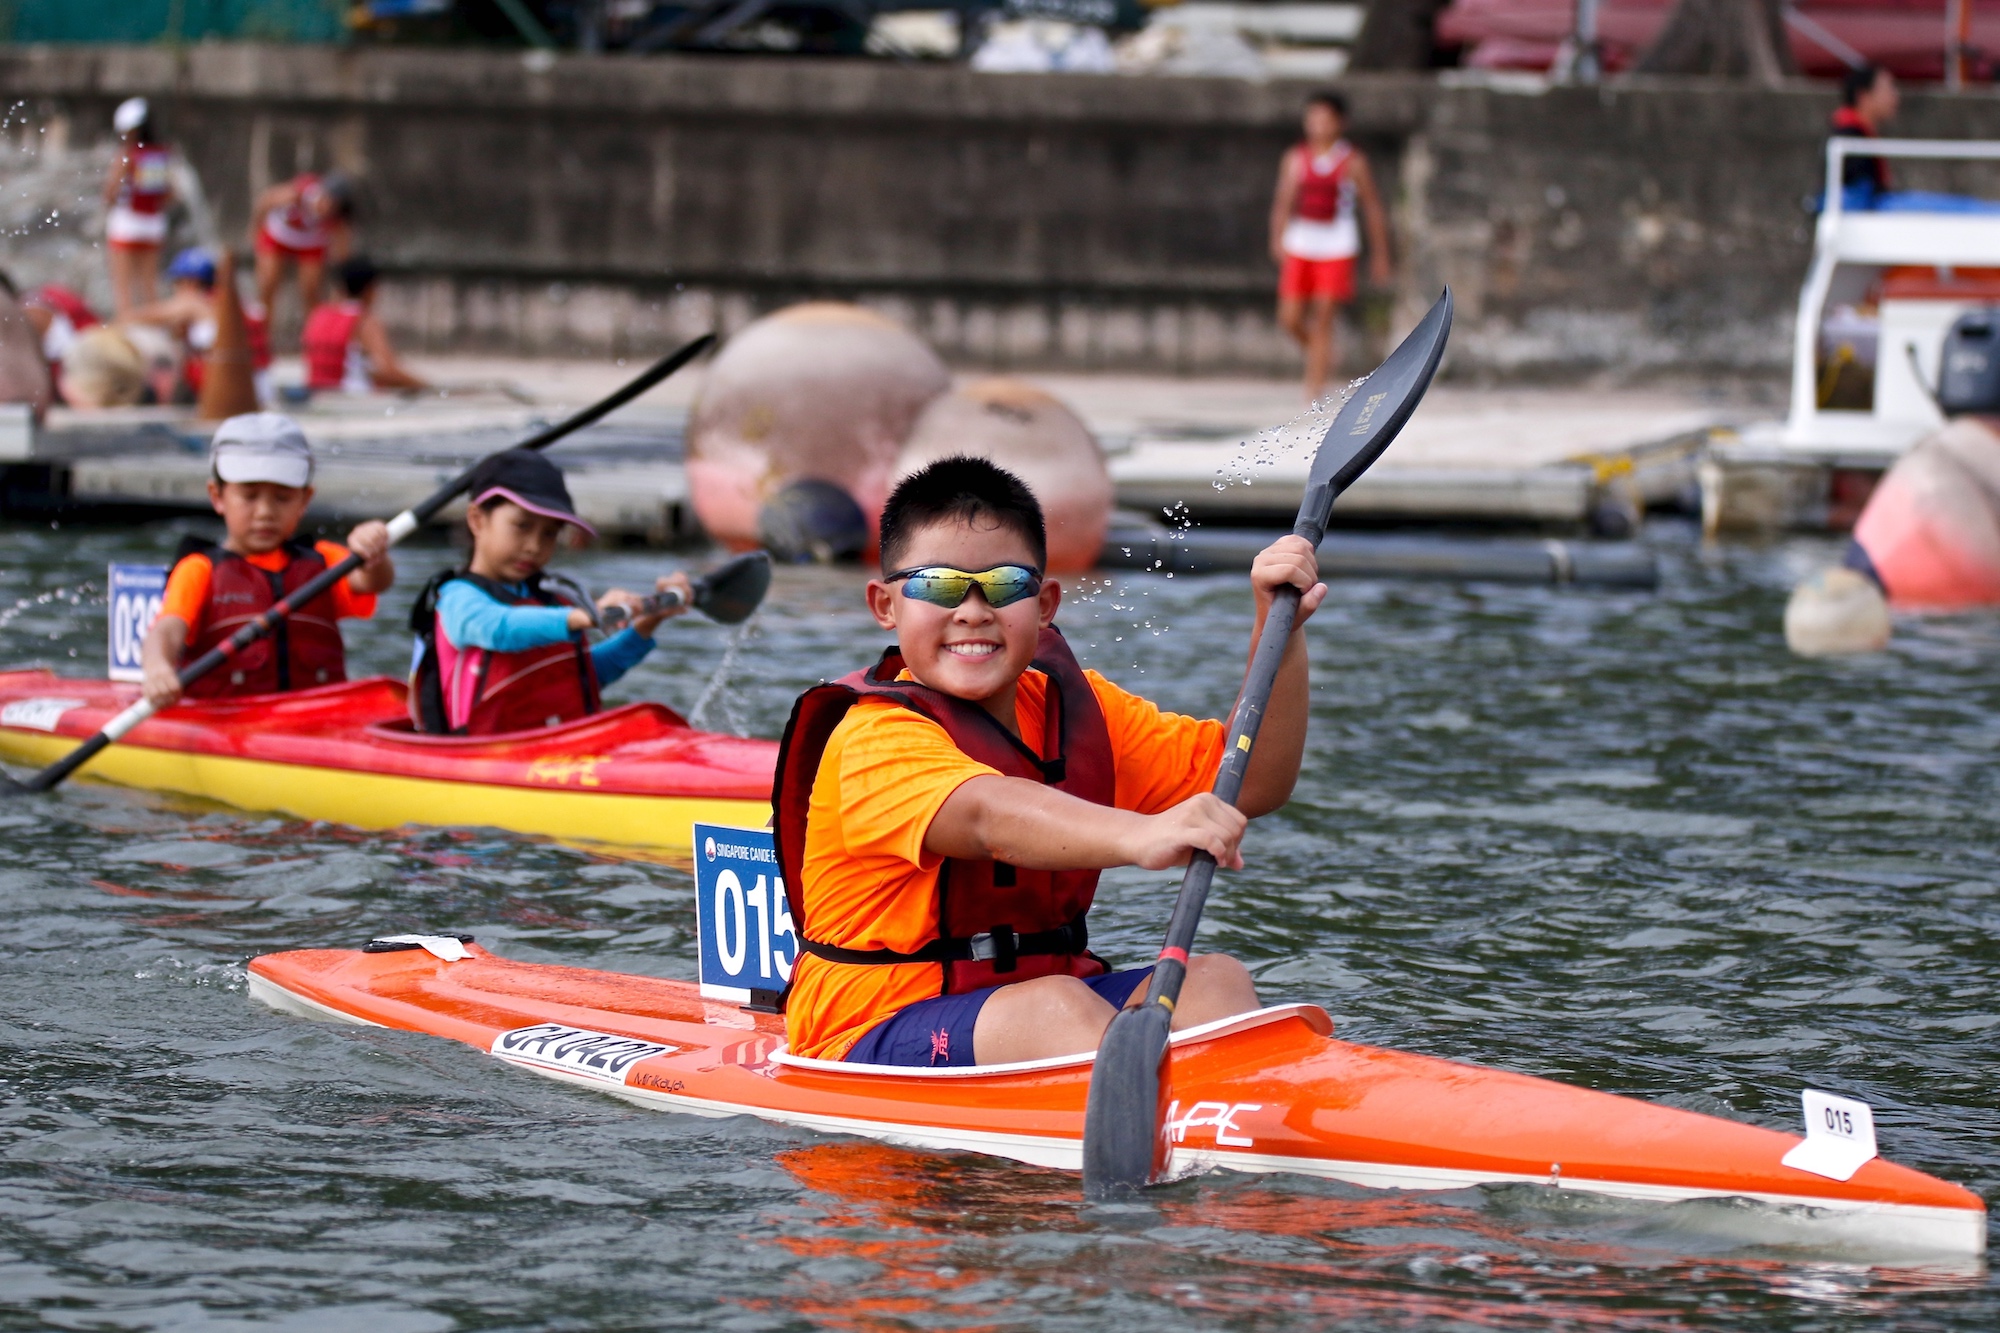 2021 Singapore Kids Kayaking Championships